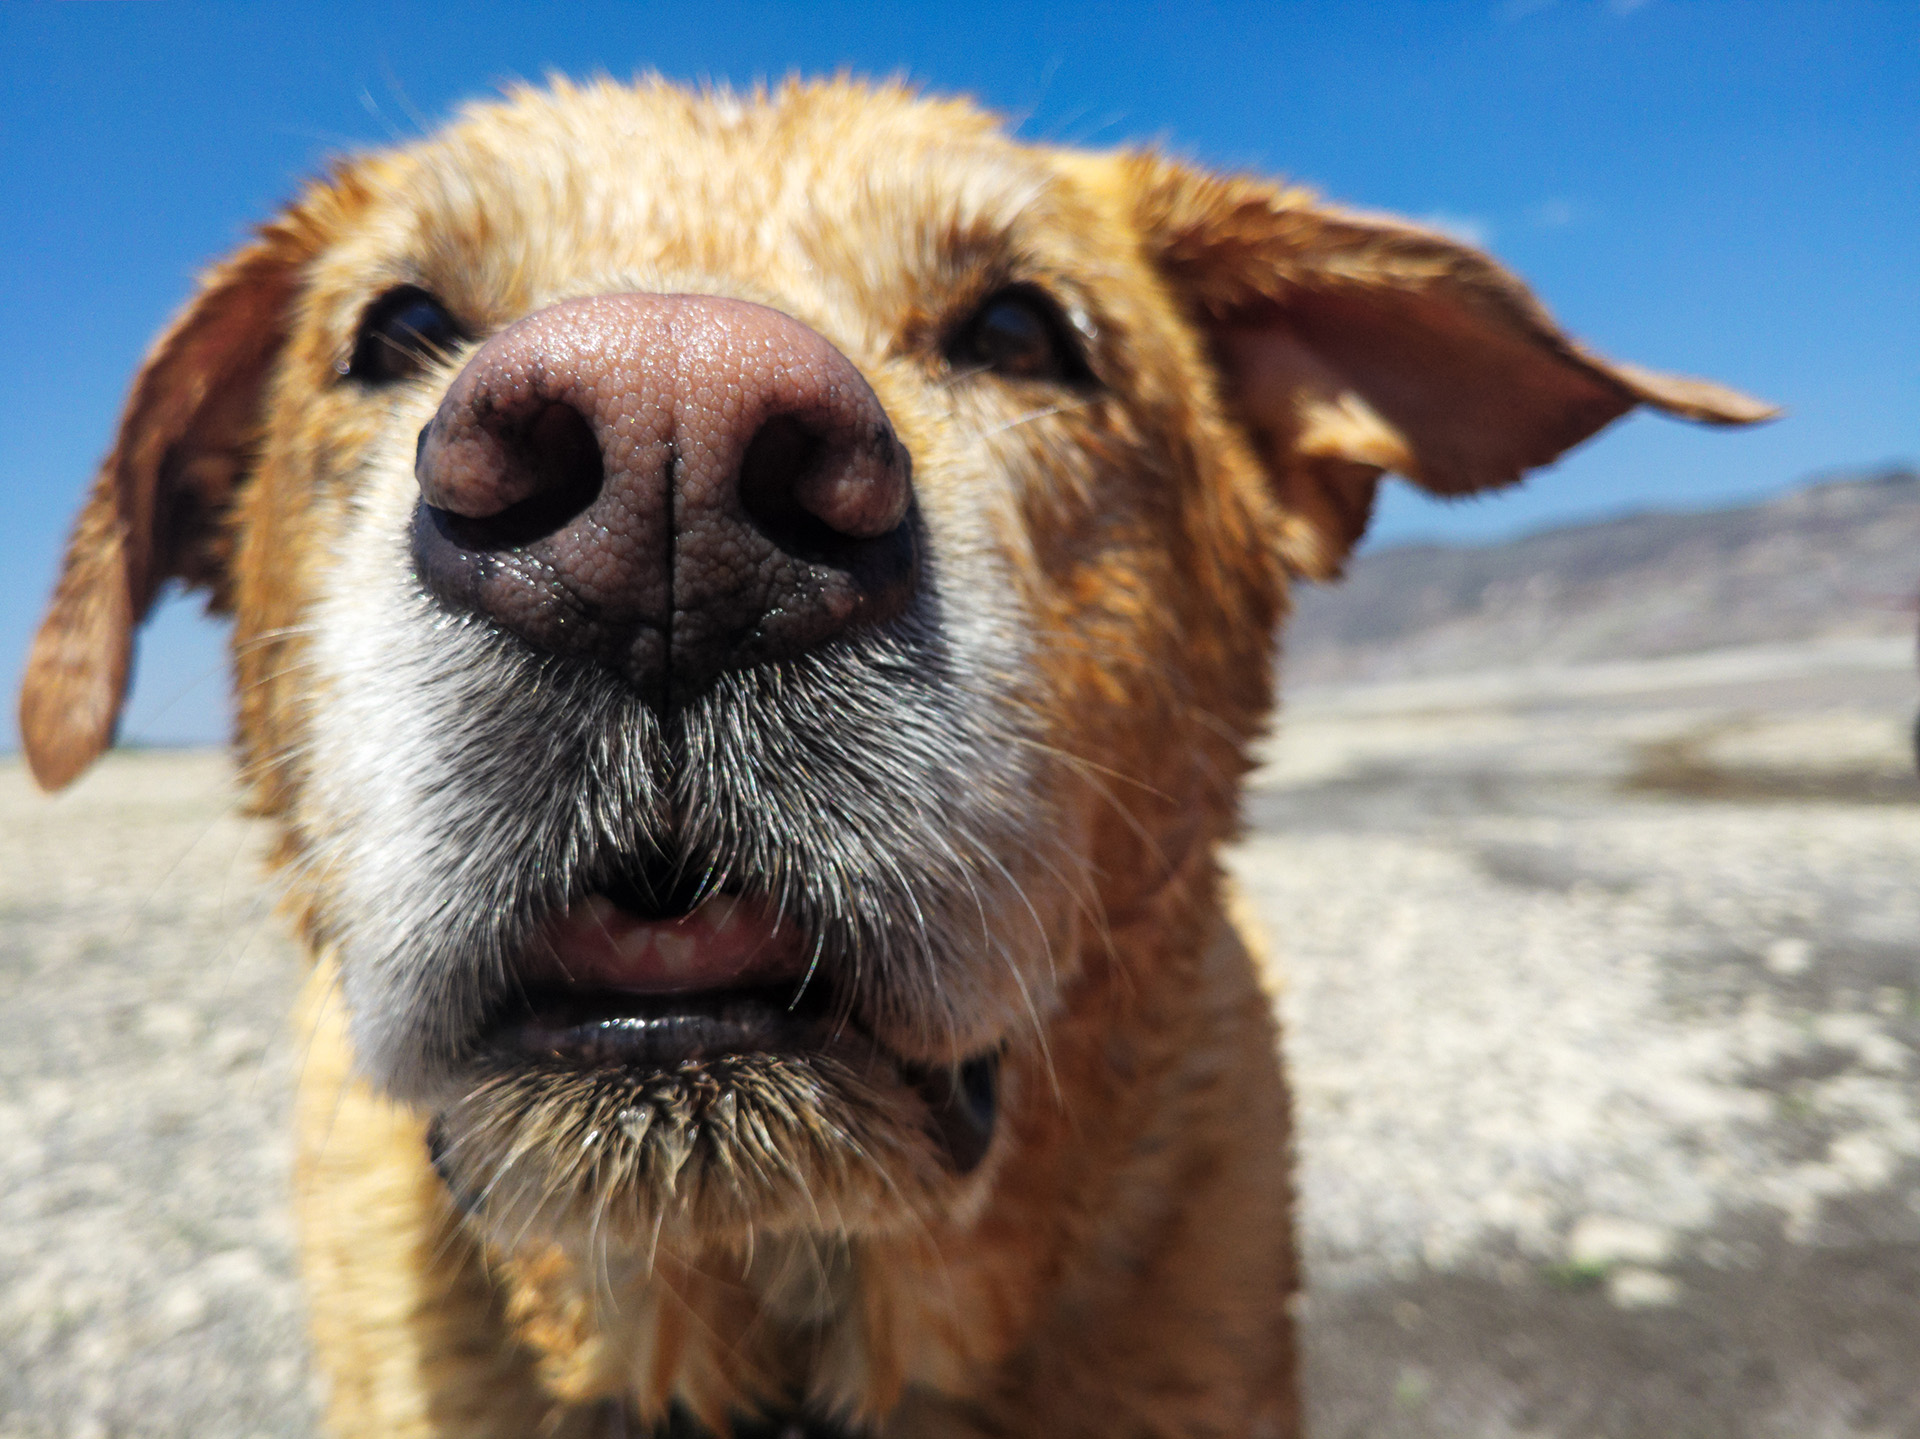 La nariz de los perros es un poderoso detector de sustancias
Getty